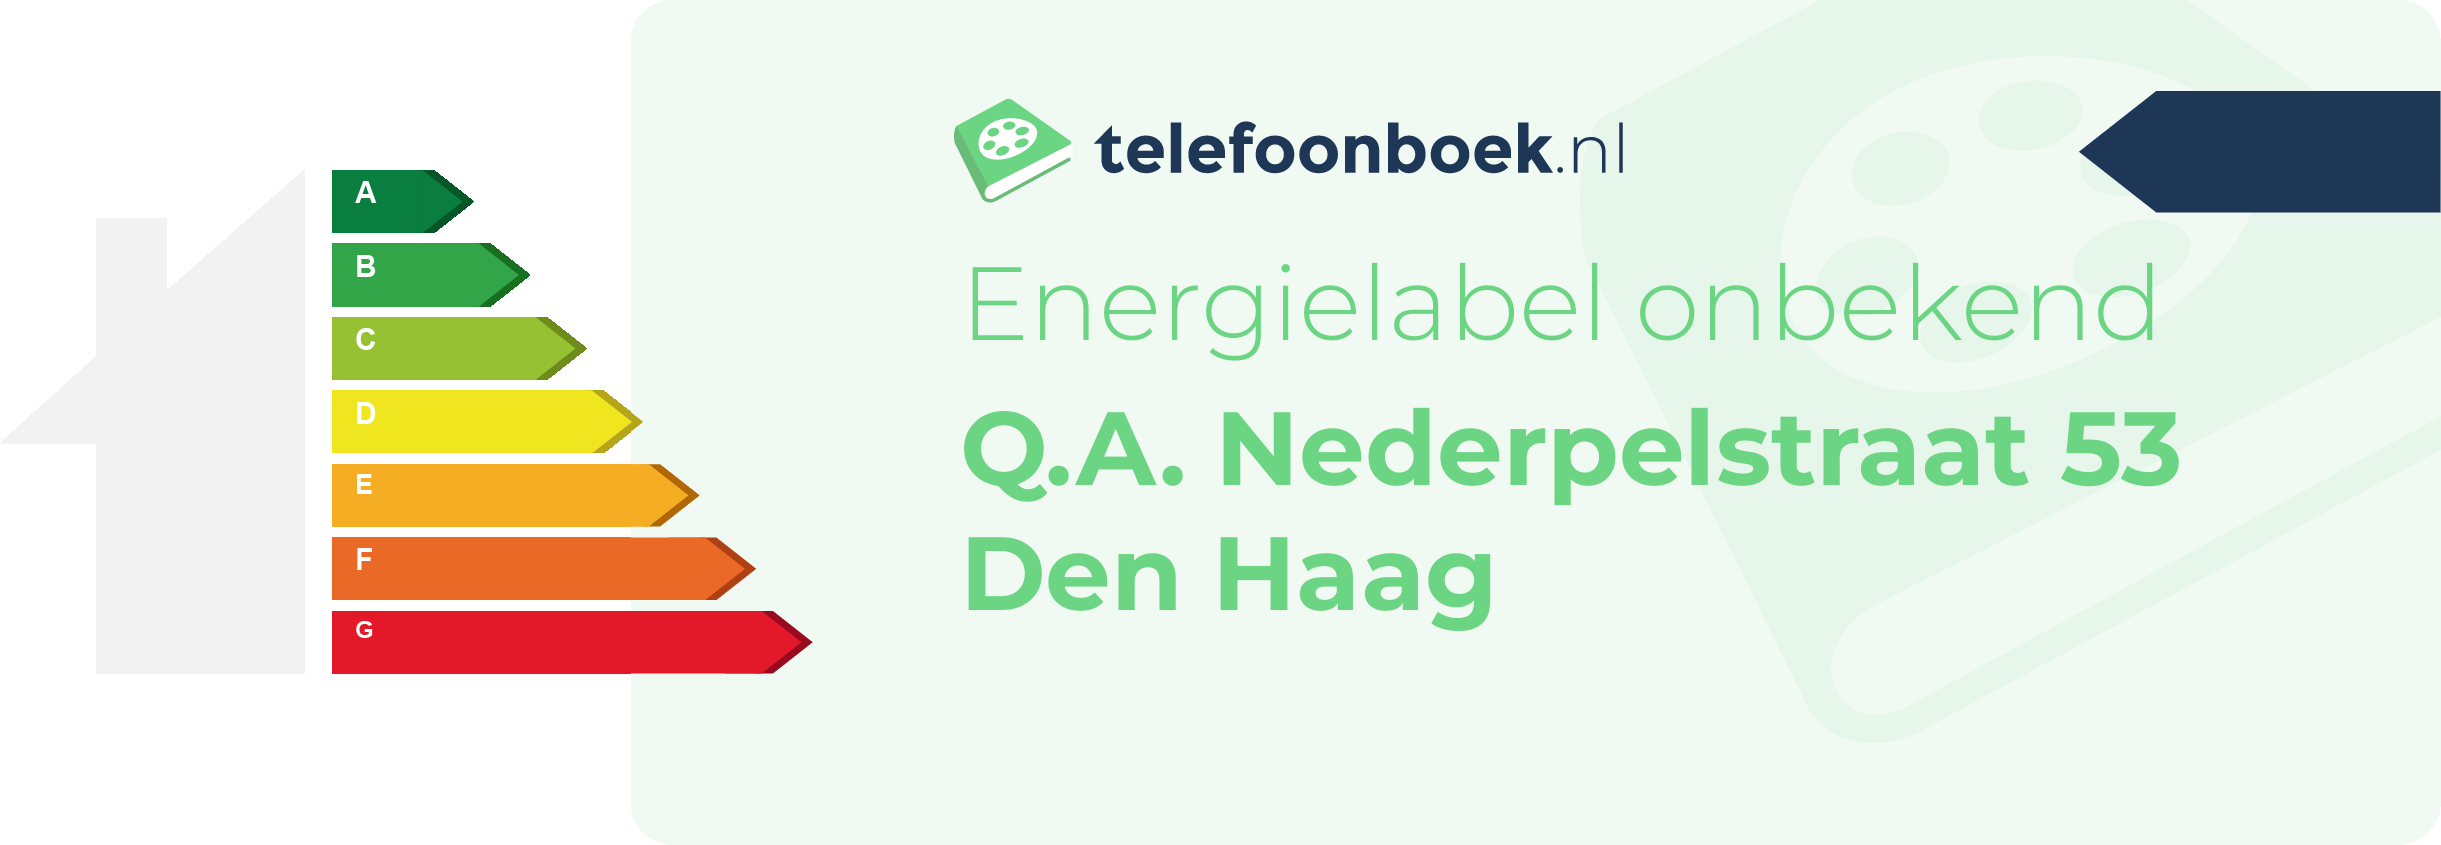 Energielabel Q.A. Nederpelstraat 53 Den Haag